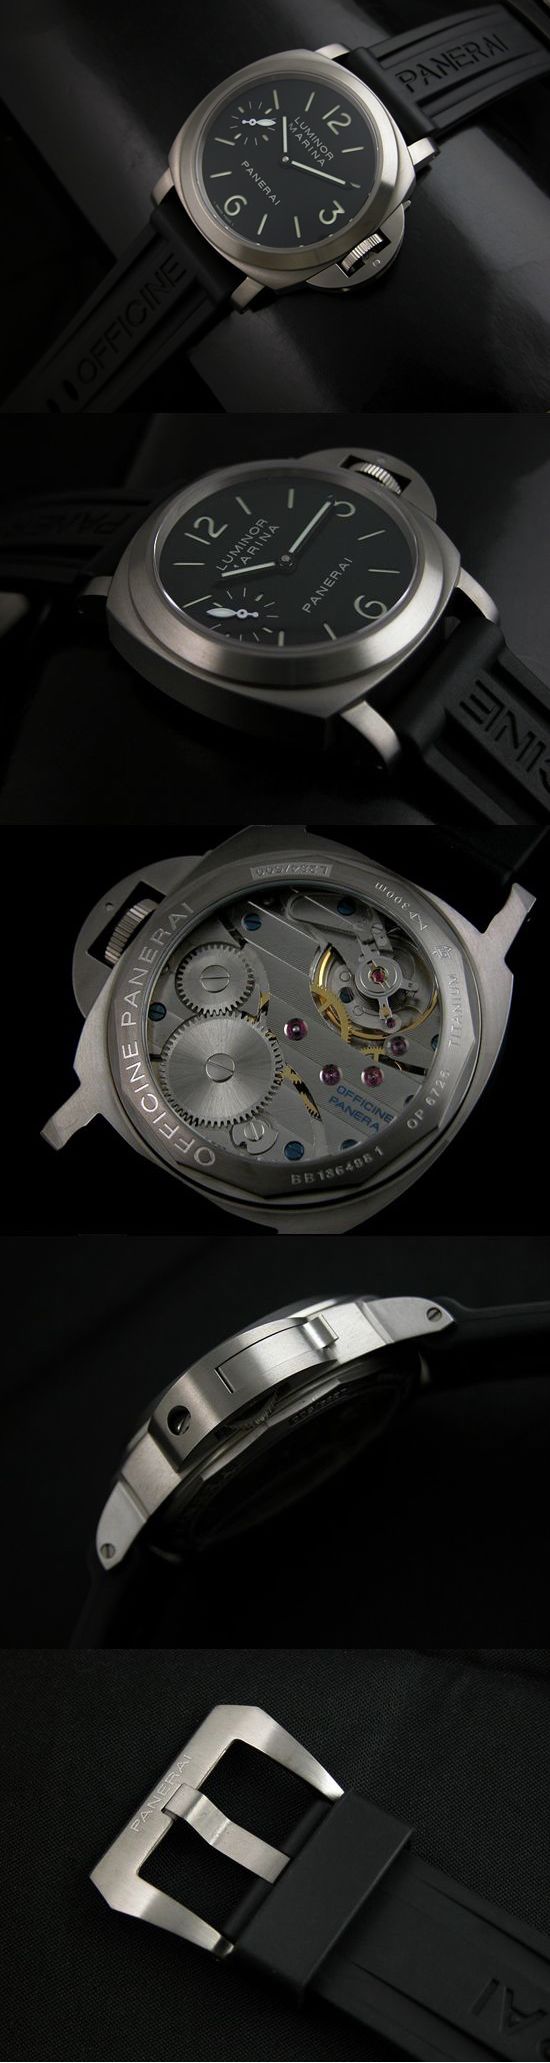 おしゃれなブランド時計がパネライ-ルミノールマリーナ-PANERAI-PAM177-bg-男性用を提供します.